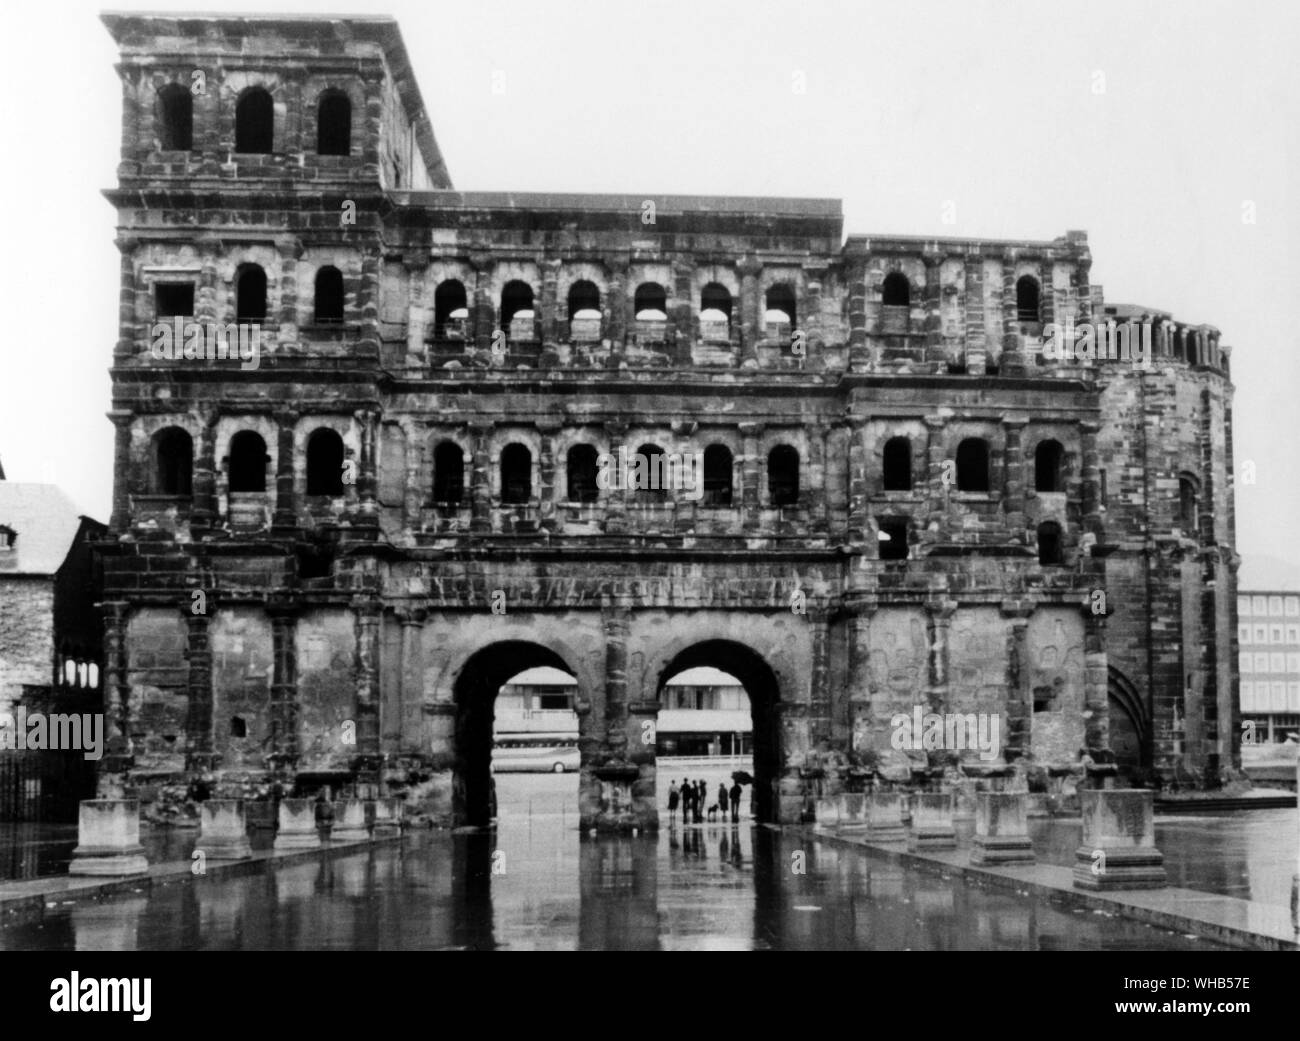 Die Porta Nigra ist eine Stadt Tor, Teil der römischen Architektur in Trier, West Germany. Von der Seite gesehen, aus dem Norden. Aus grauem Sandstein zwischen 180 und 200 N.CHR. errichtet. . . Stockfoto